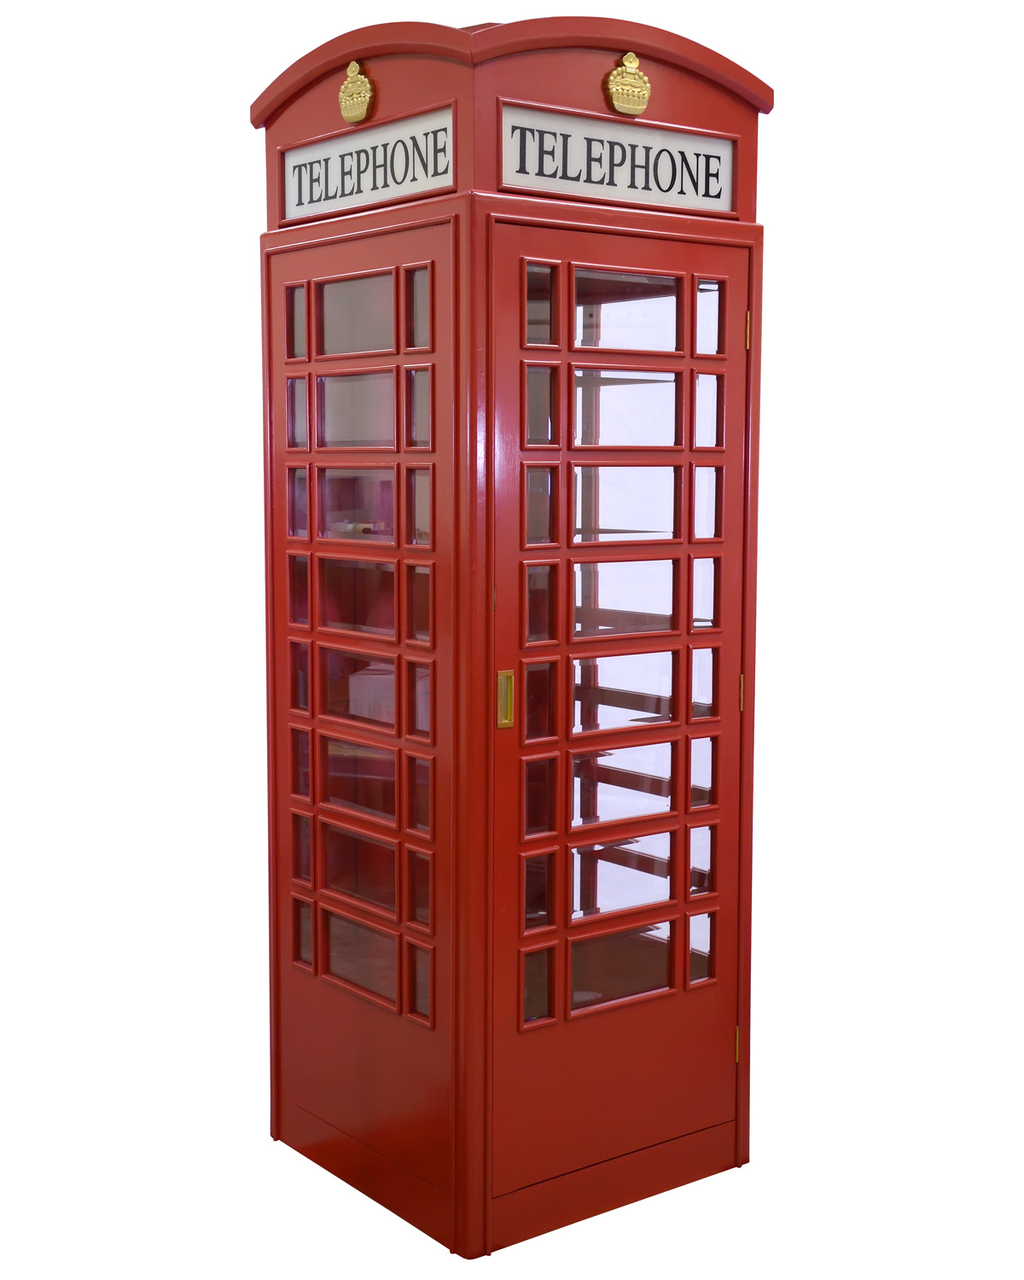 Phone both. Английская телефонная будка. Красная телефонная будка в Лондоне. Телефонная будка Англия. Шкаф в виде телефонной будки.